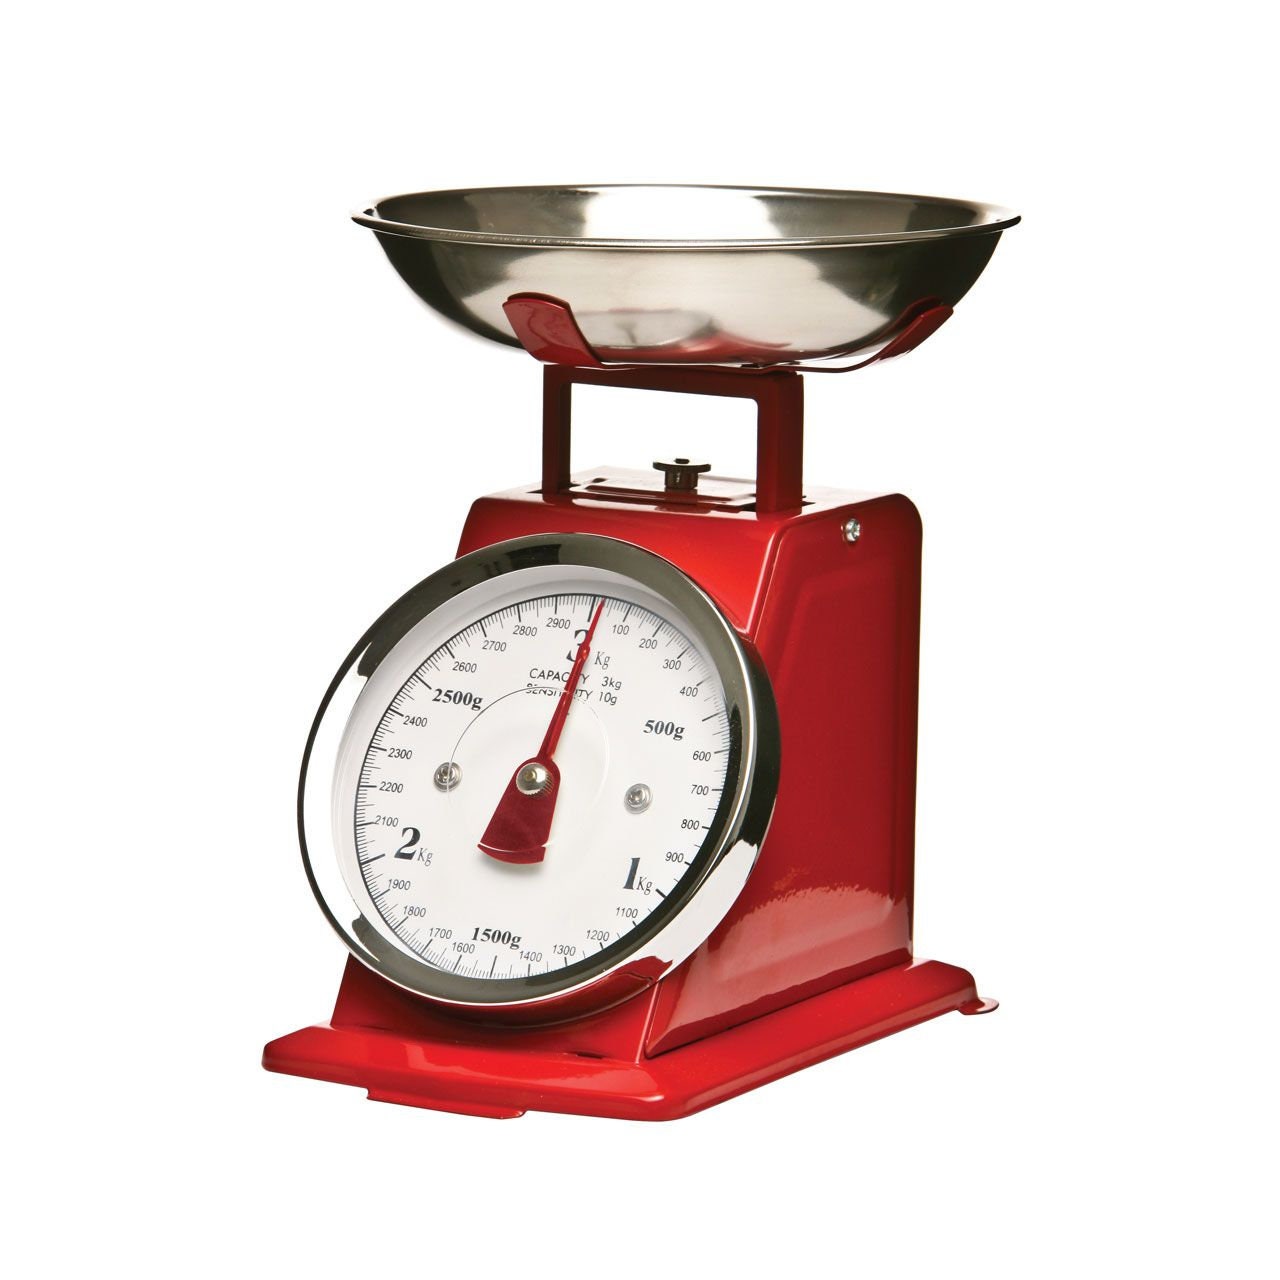 Retro kitchen scale - red